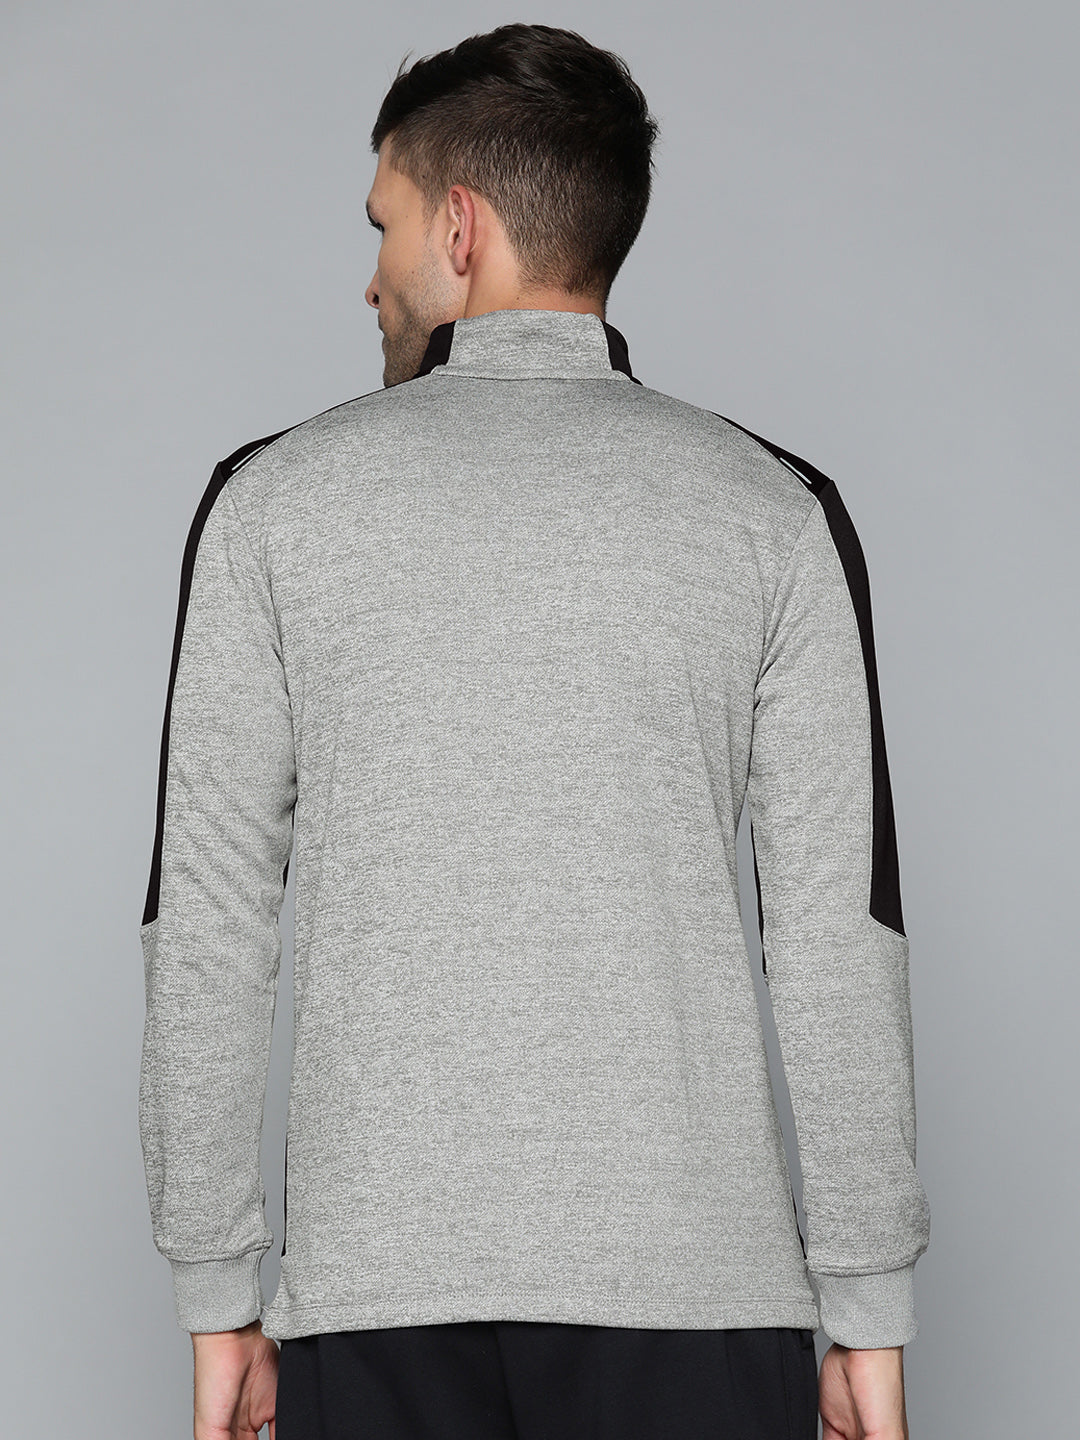 Alcis Men Black Grey Colourblocked Sweatshirt